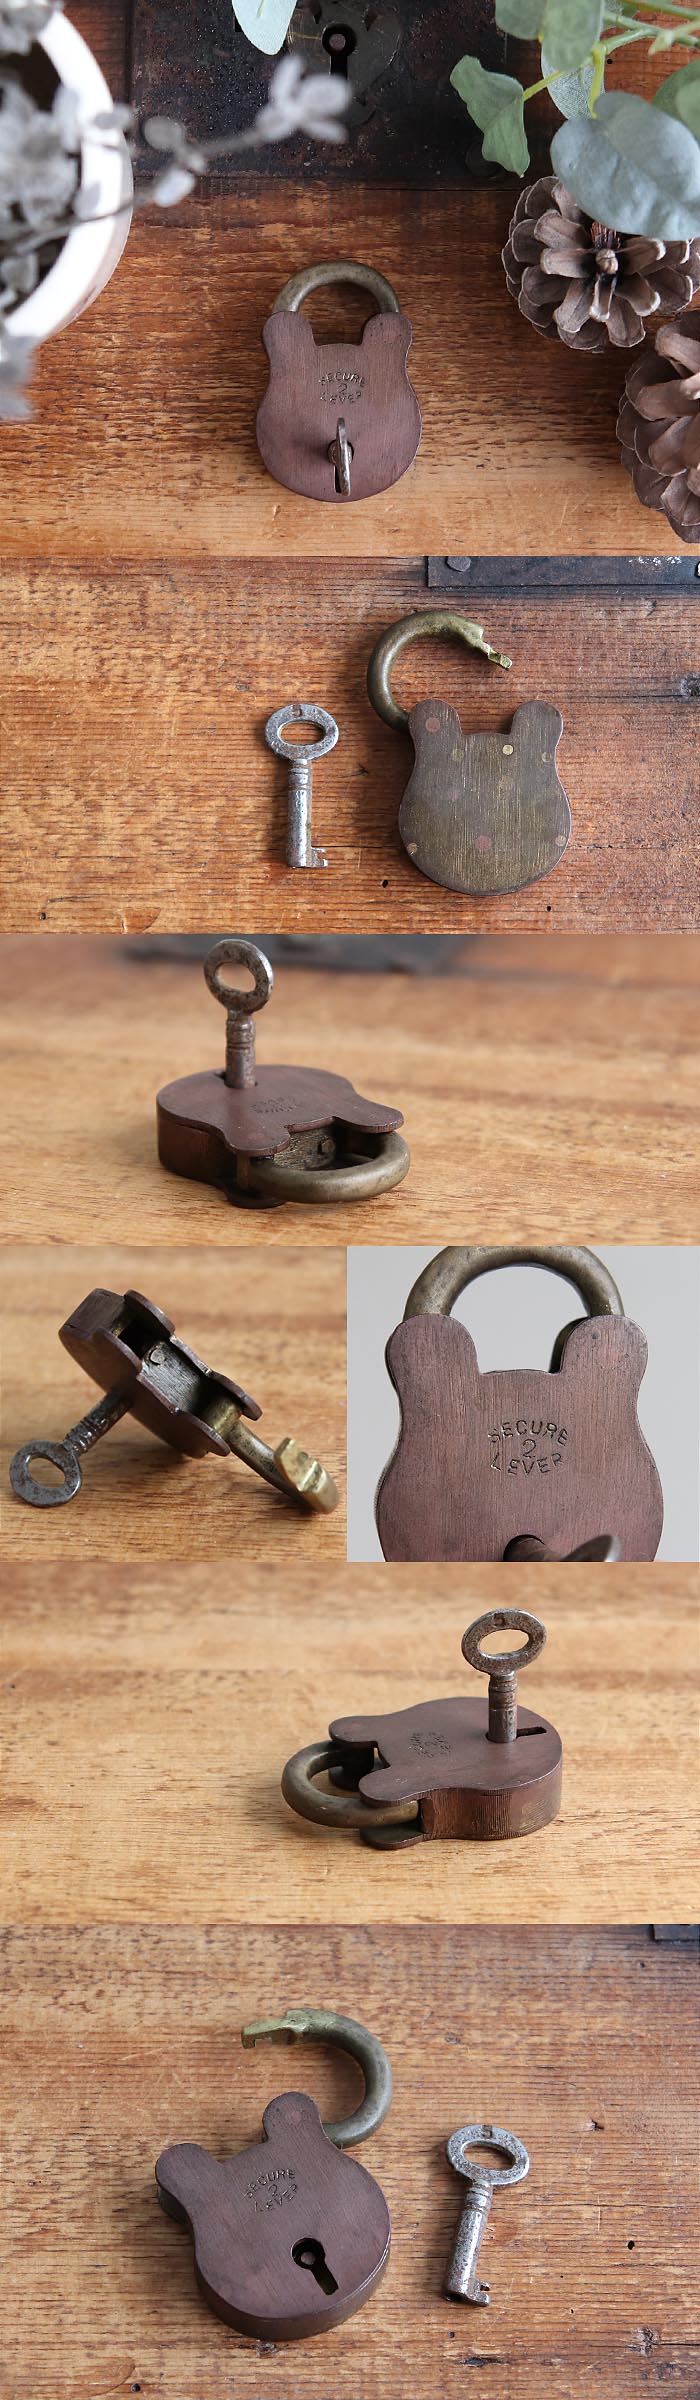 イギリス アンティーク パドロック 南京錠 鍵付き おしゃれ 雑貨 小物「可愛いくまさん型」T-937